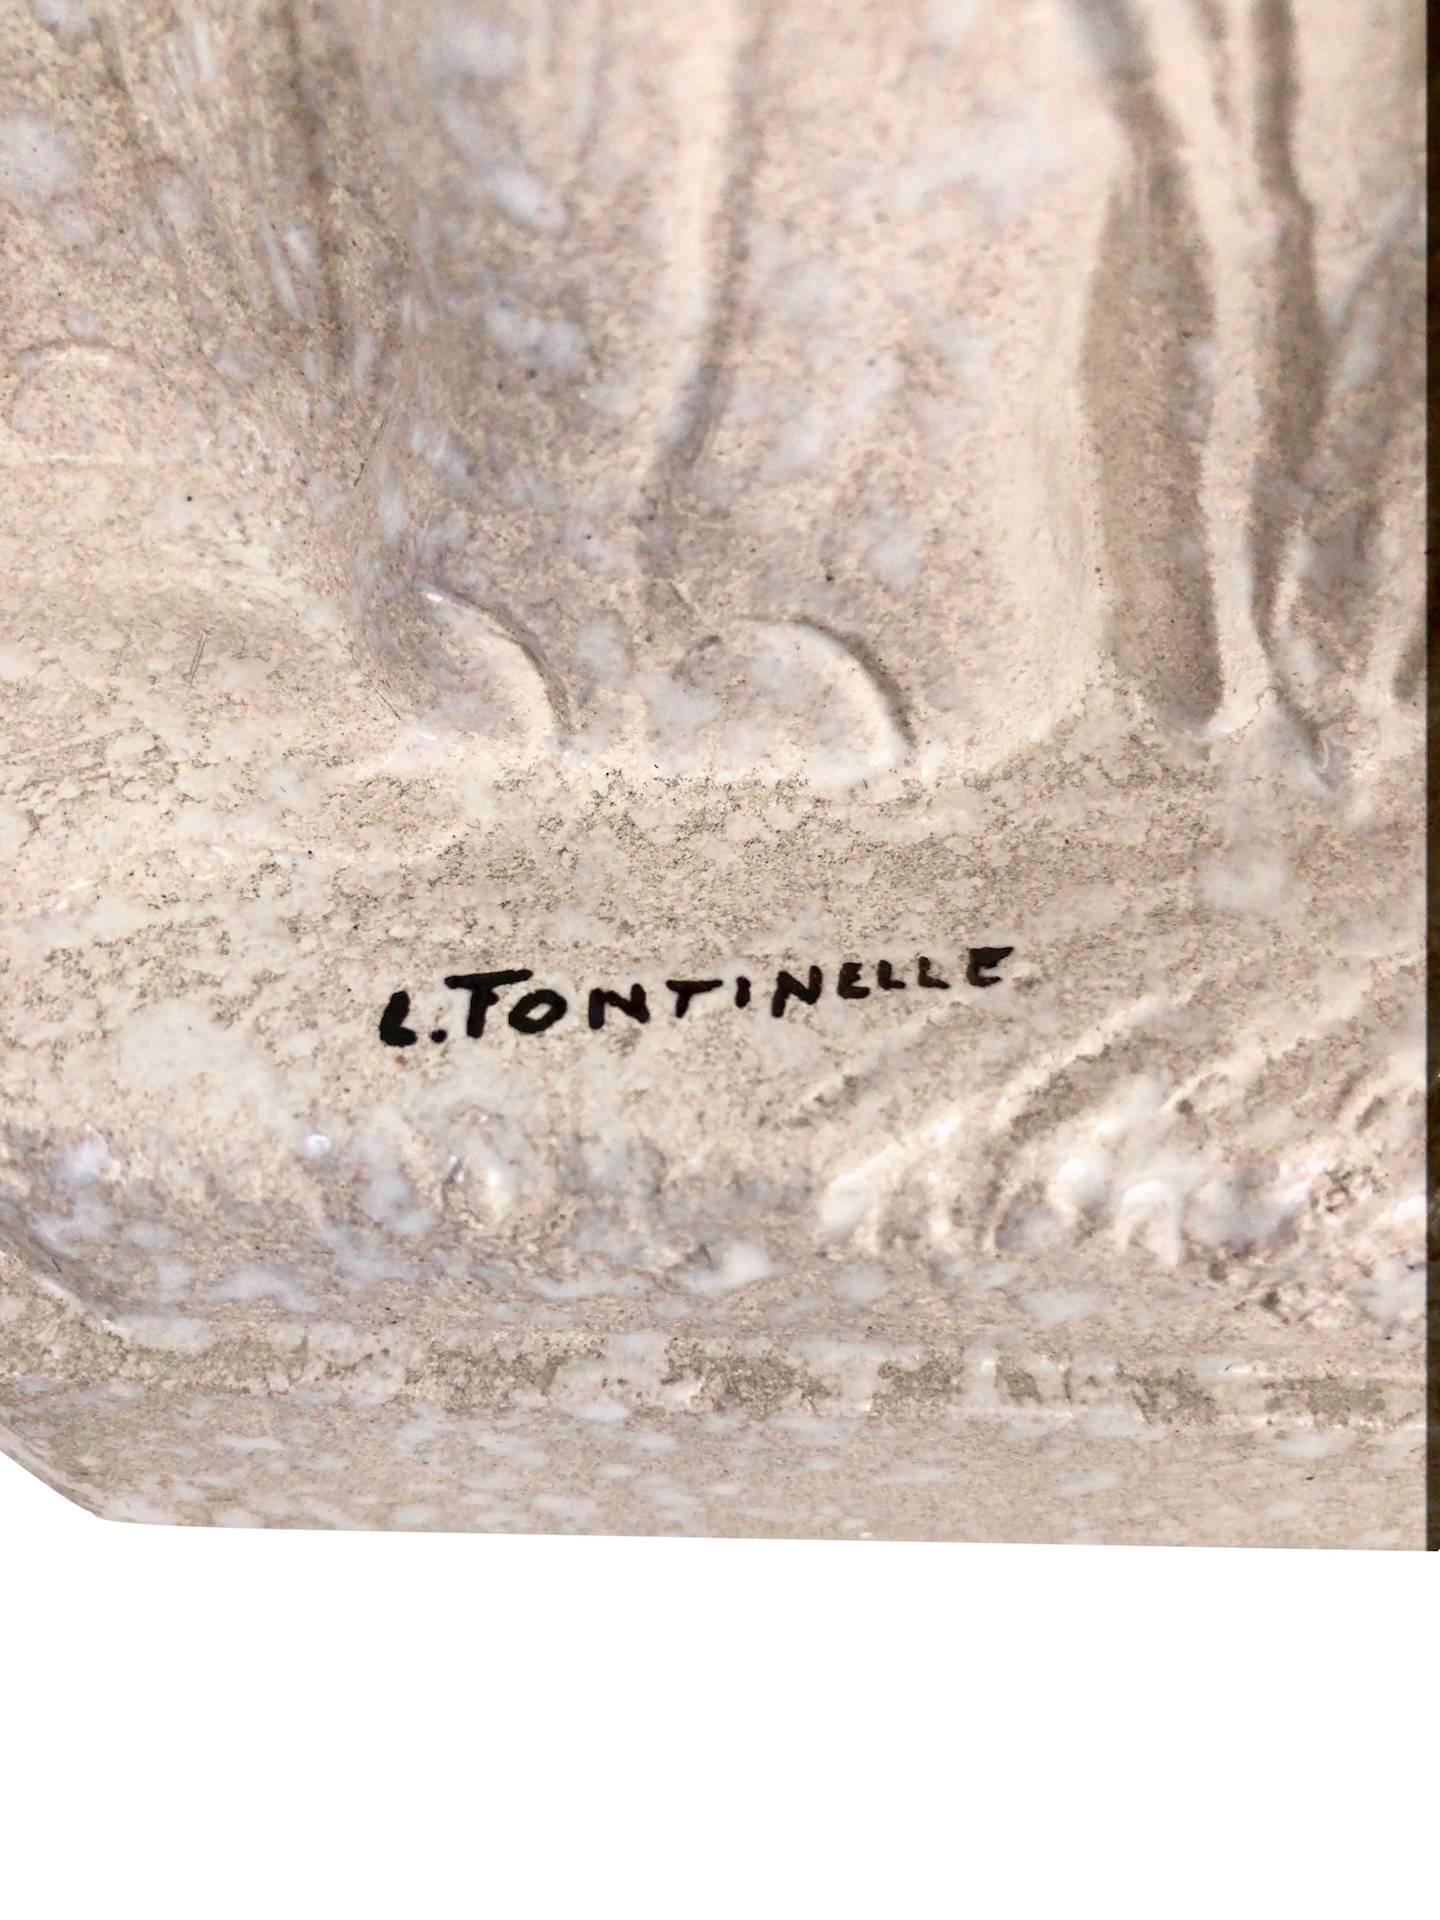 Elefanten aus cremefarben glasierter Keramik von Louis Fontinelle (1886-1964).
Unterzeichnet: L. Fontinelle
Frankreich, 1930er Jahre.

Abmessungen:
Breite 51 cm
Höhe 30 cm
Tiefe 8 cm.
 